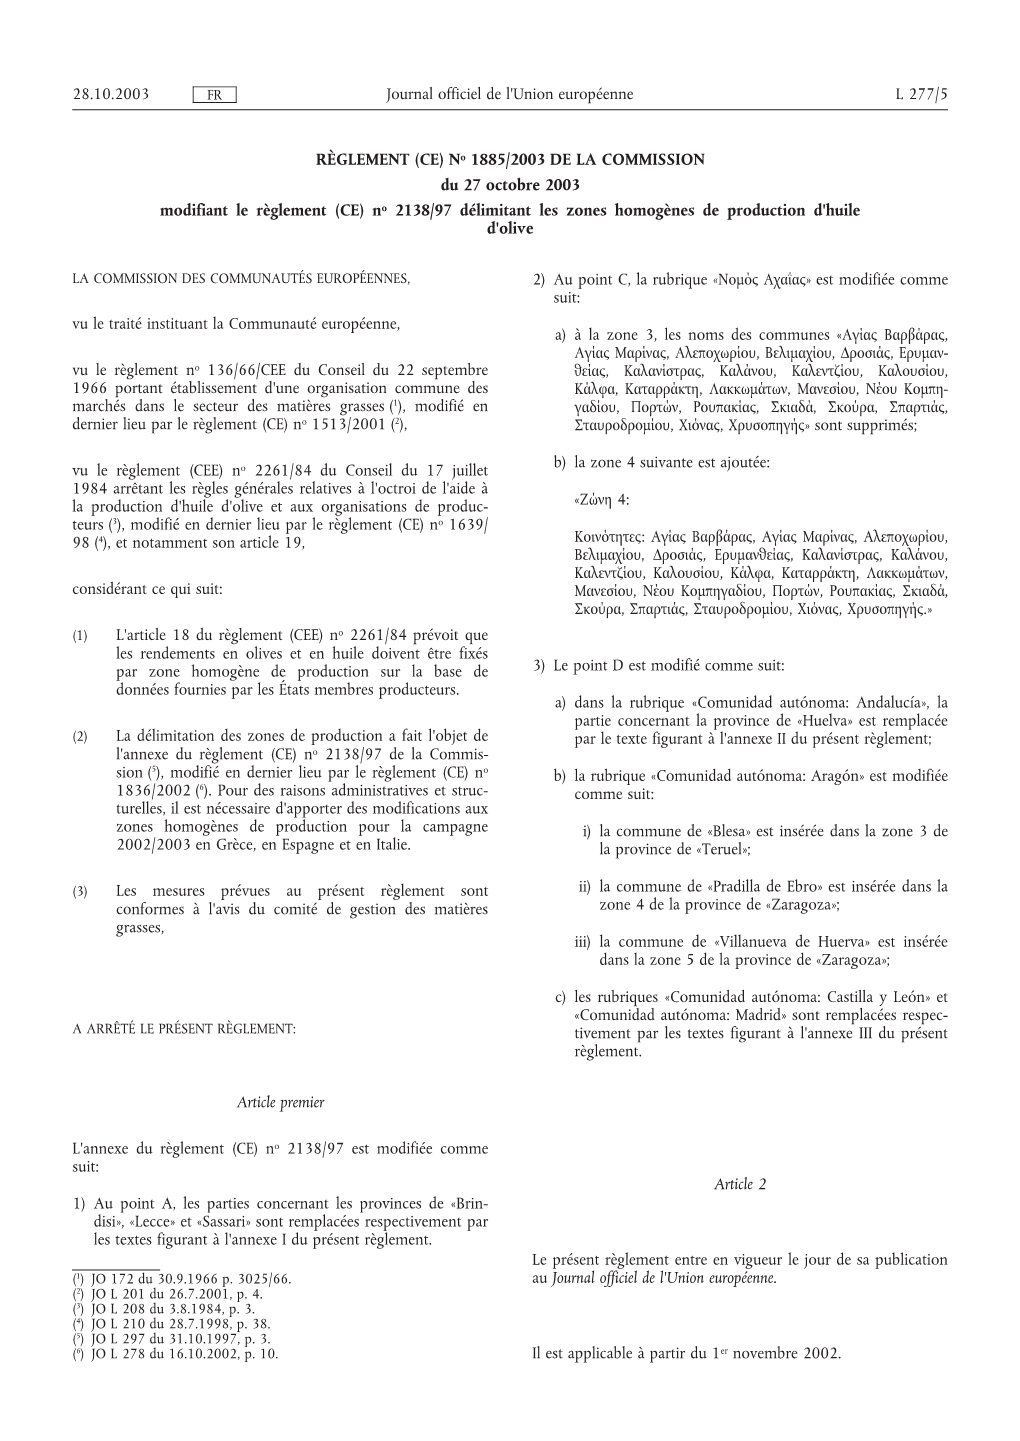 No 1885/2003 DE LA COMMISSION Du 27 Octobre 2003 Modifiant Le Règlement (CE) No 2138/97 Délimitant Les Zones Homogènes De Production D'huile D'olive